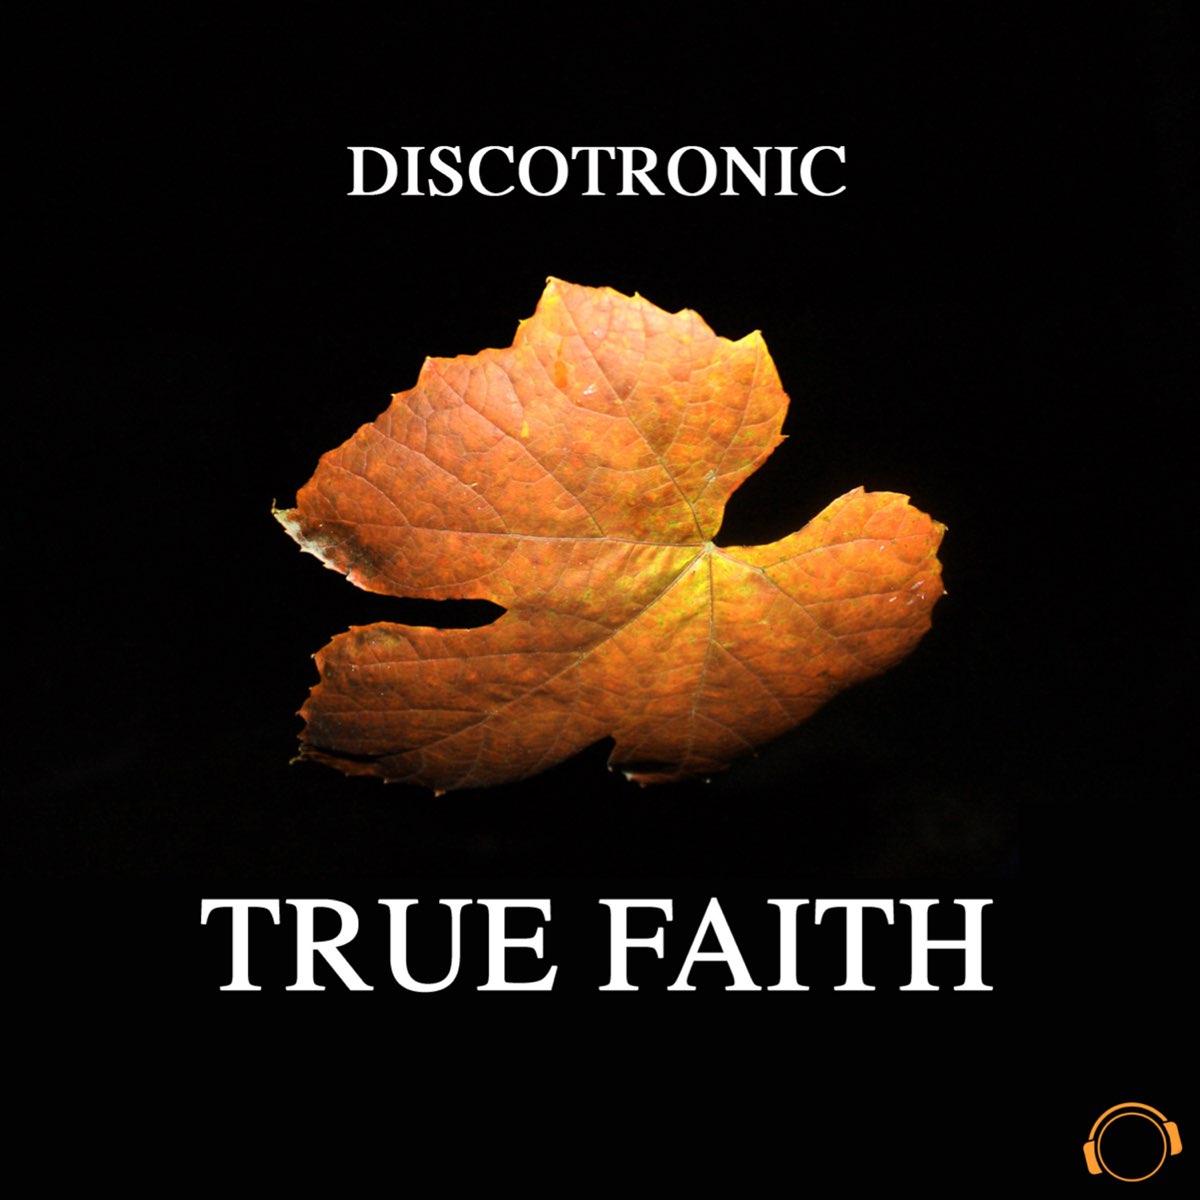 True faith. Discotronic. Песня true Faith.